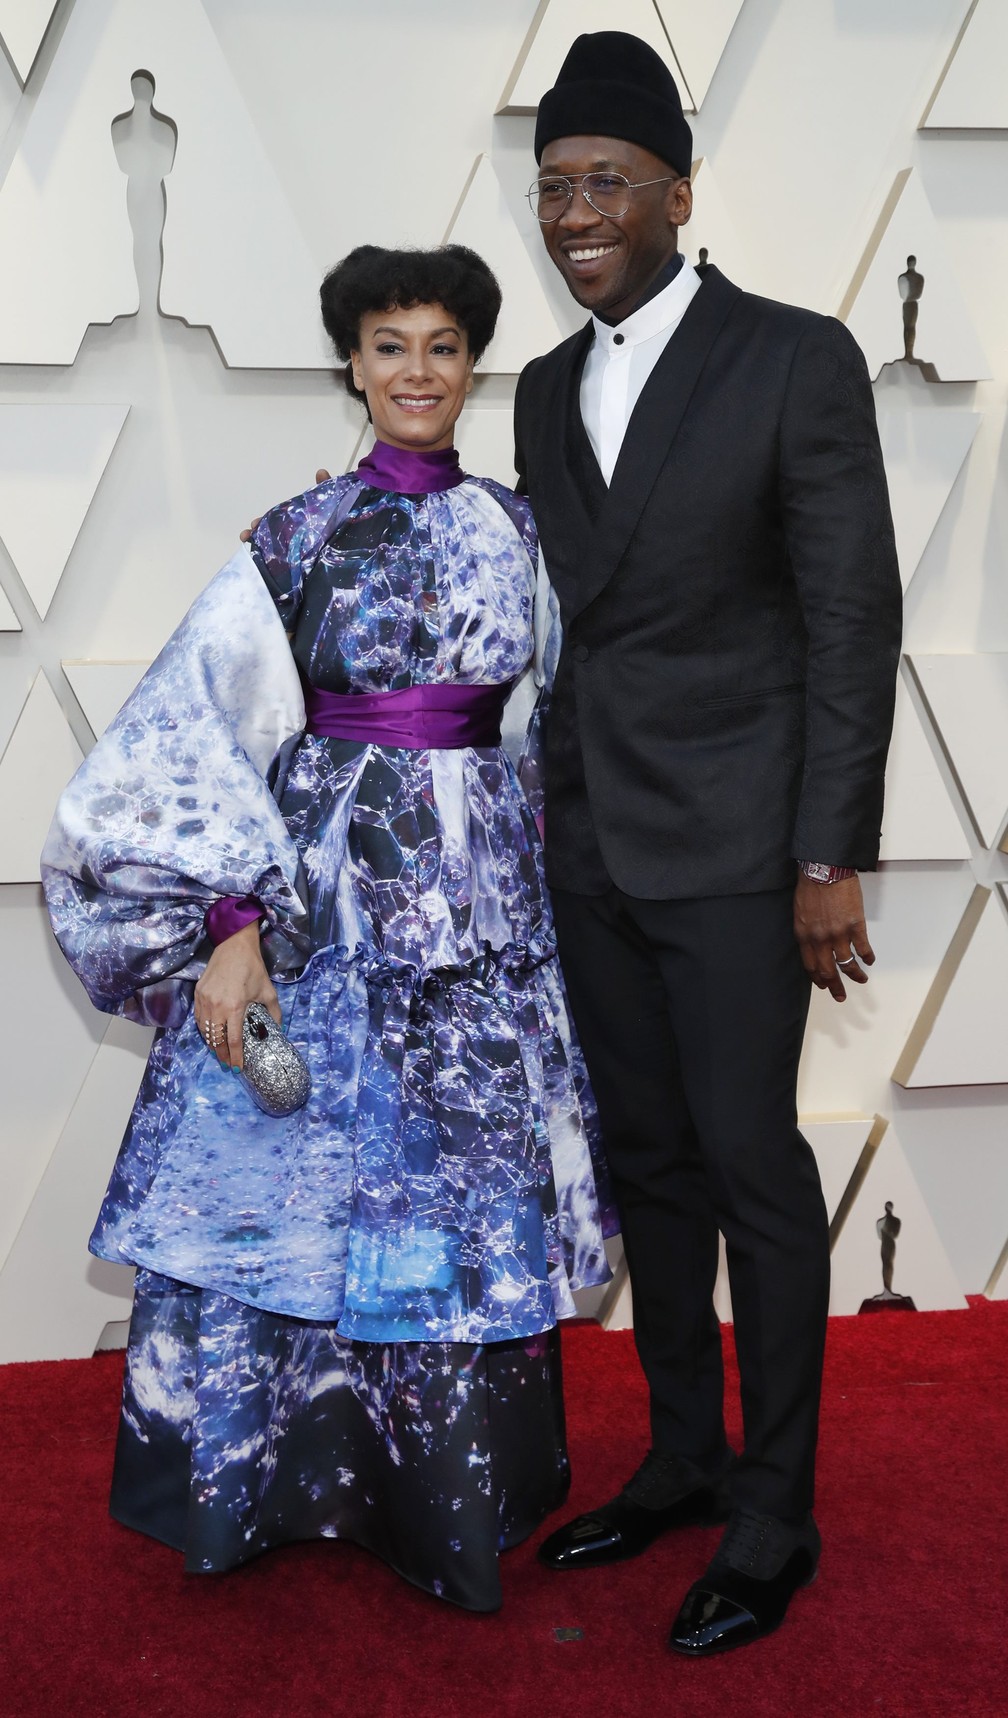 Mahershala Ali e sua esposa  Amatus Sami-Karim no tapete vermelho do Oscar 2019 â€” Foto: Mario Anzuoni/Reuters